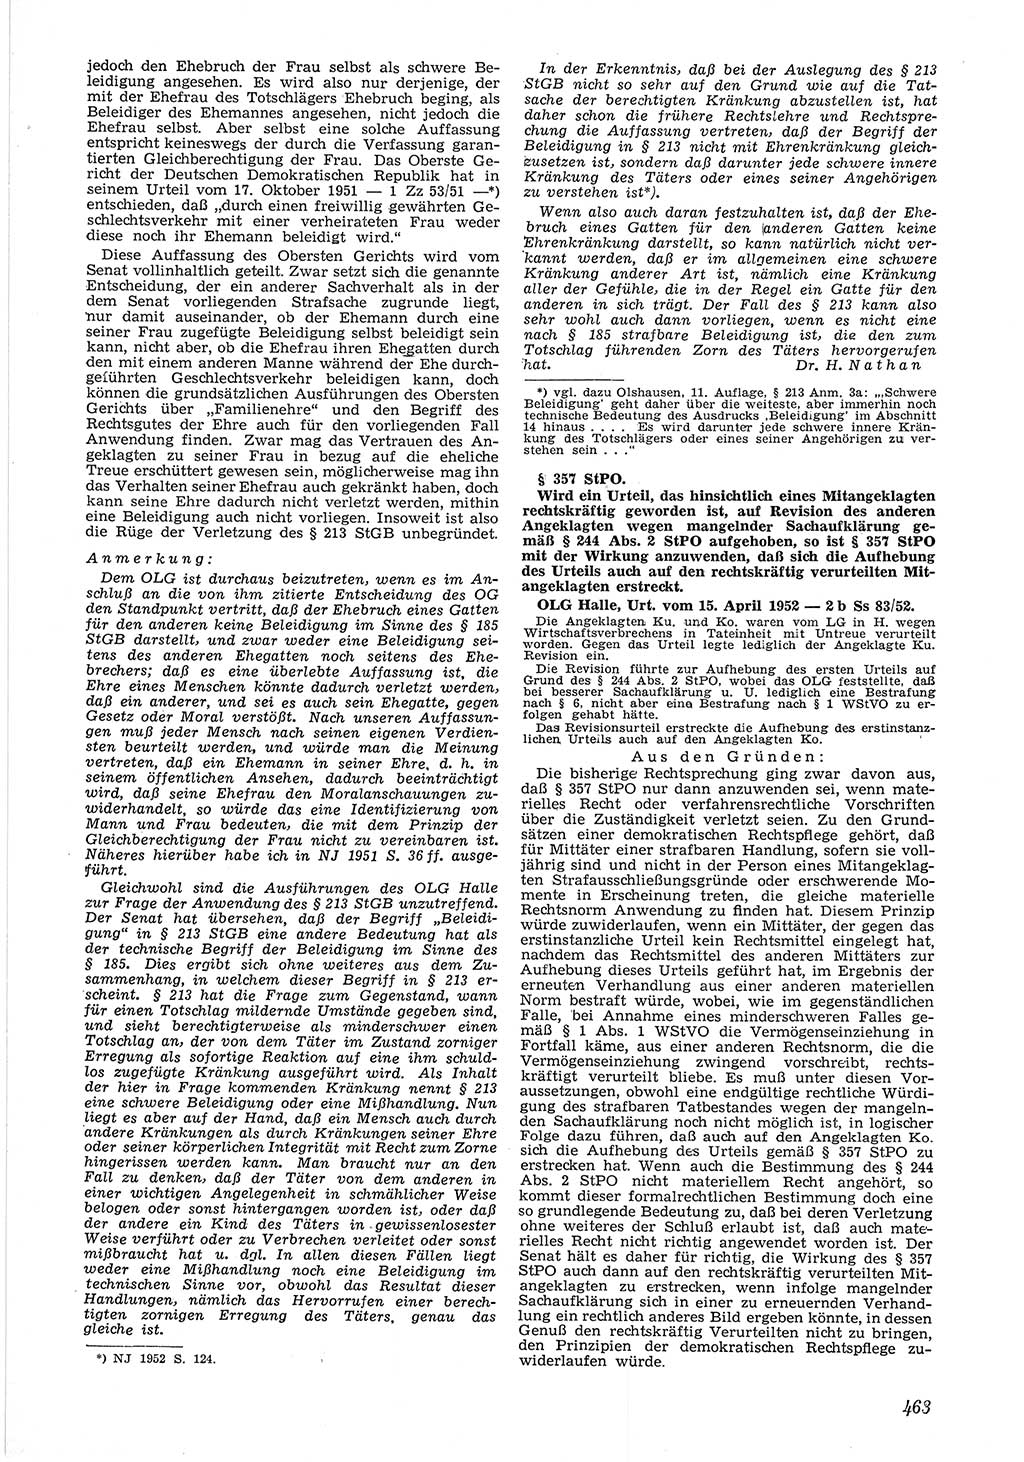 Neue Justiz (NJ), Zeitschrift für Recht und Rechtswissenschaft [Deutsche Demokratische Republik (DDR)], 6. Jahrgang 1952, Seite 463 (NJ DDR 1952, S. 463)